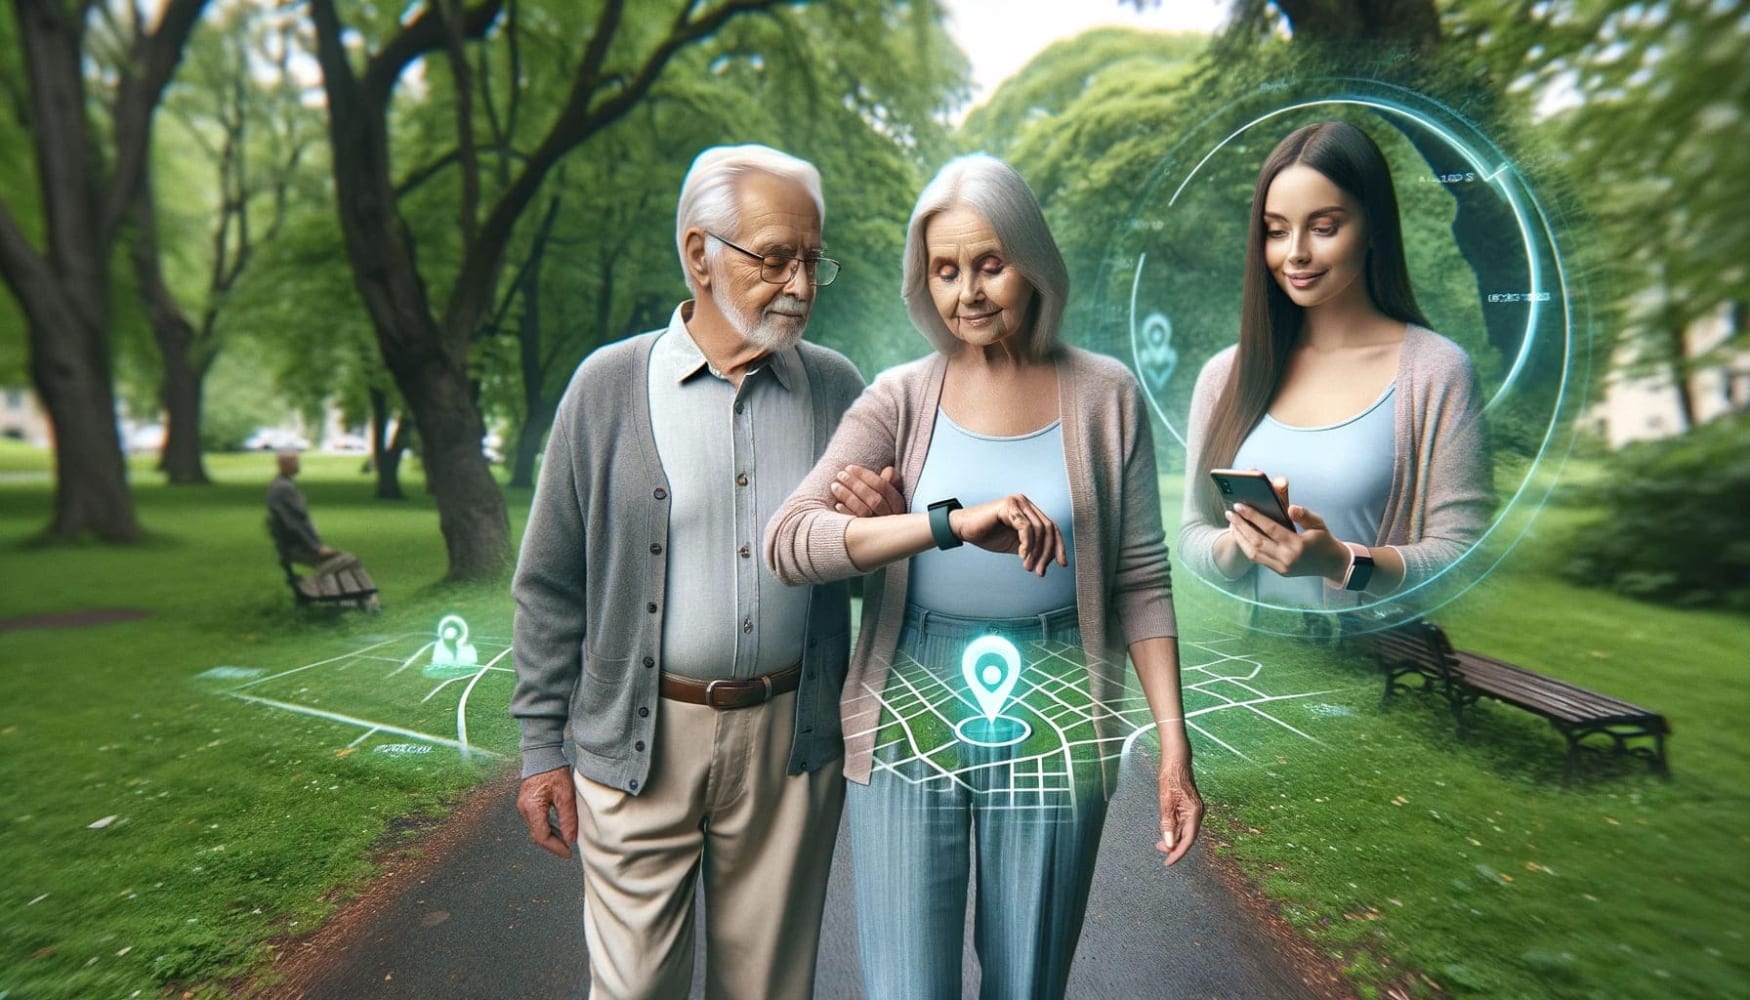 Um homem e uma mulher mais velhos, um ao lado do outro em uma calçada, olhando para seus relógios, árvores verdes ao redor e algumas grades de geolocalização, com uma garota à direita em um círculo olhando para seu telefone